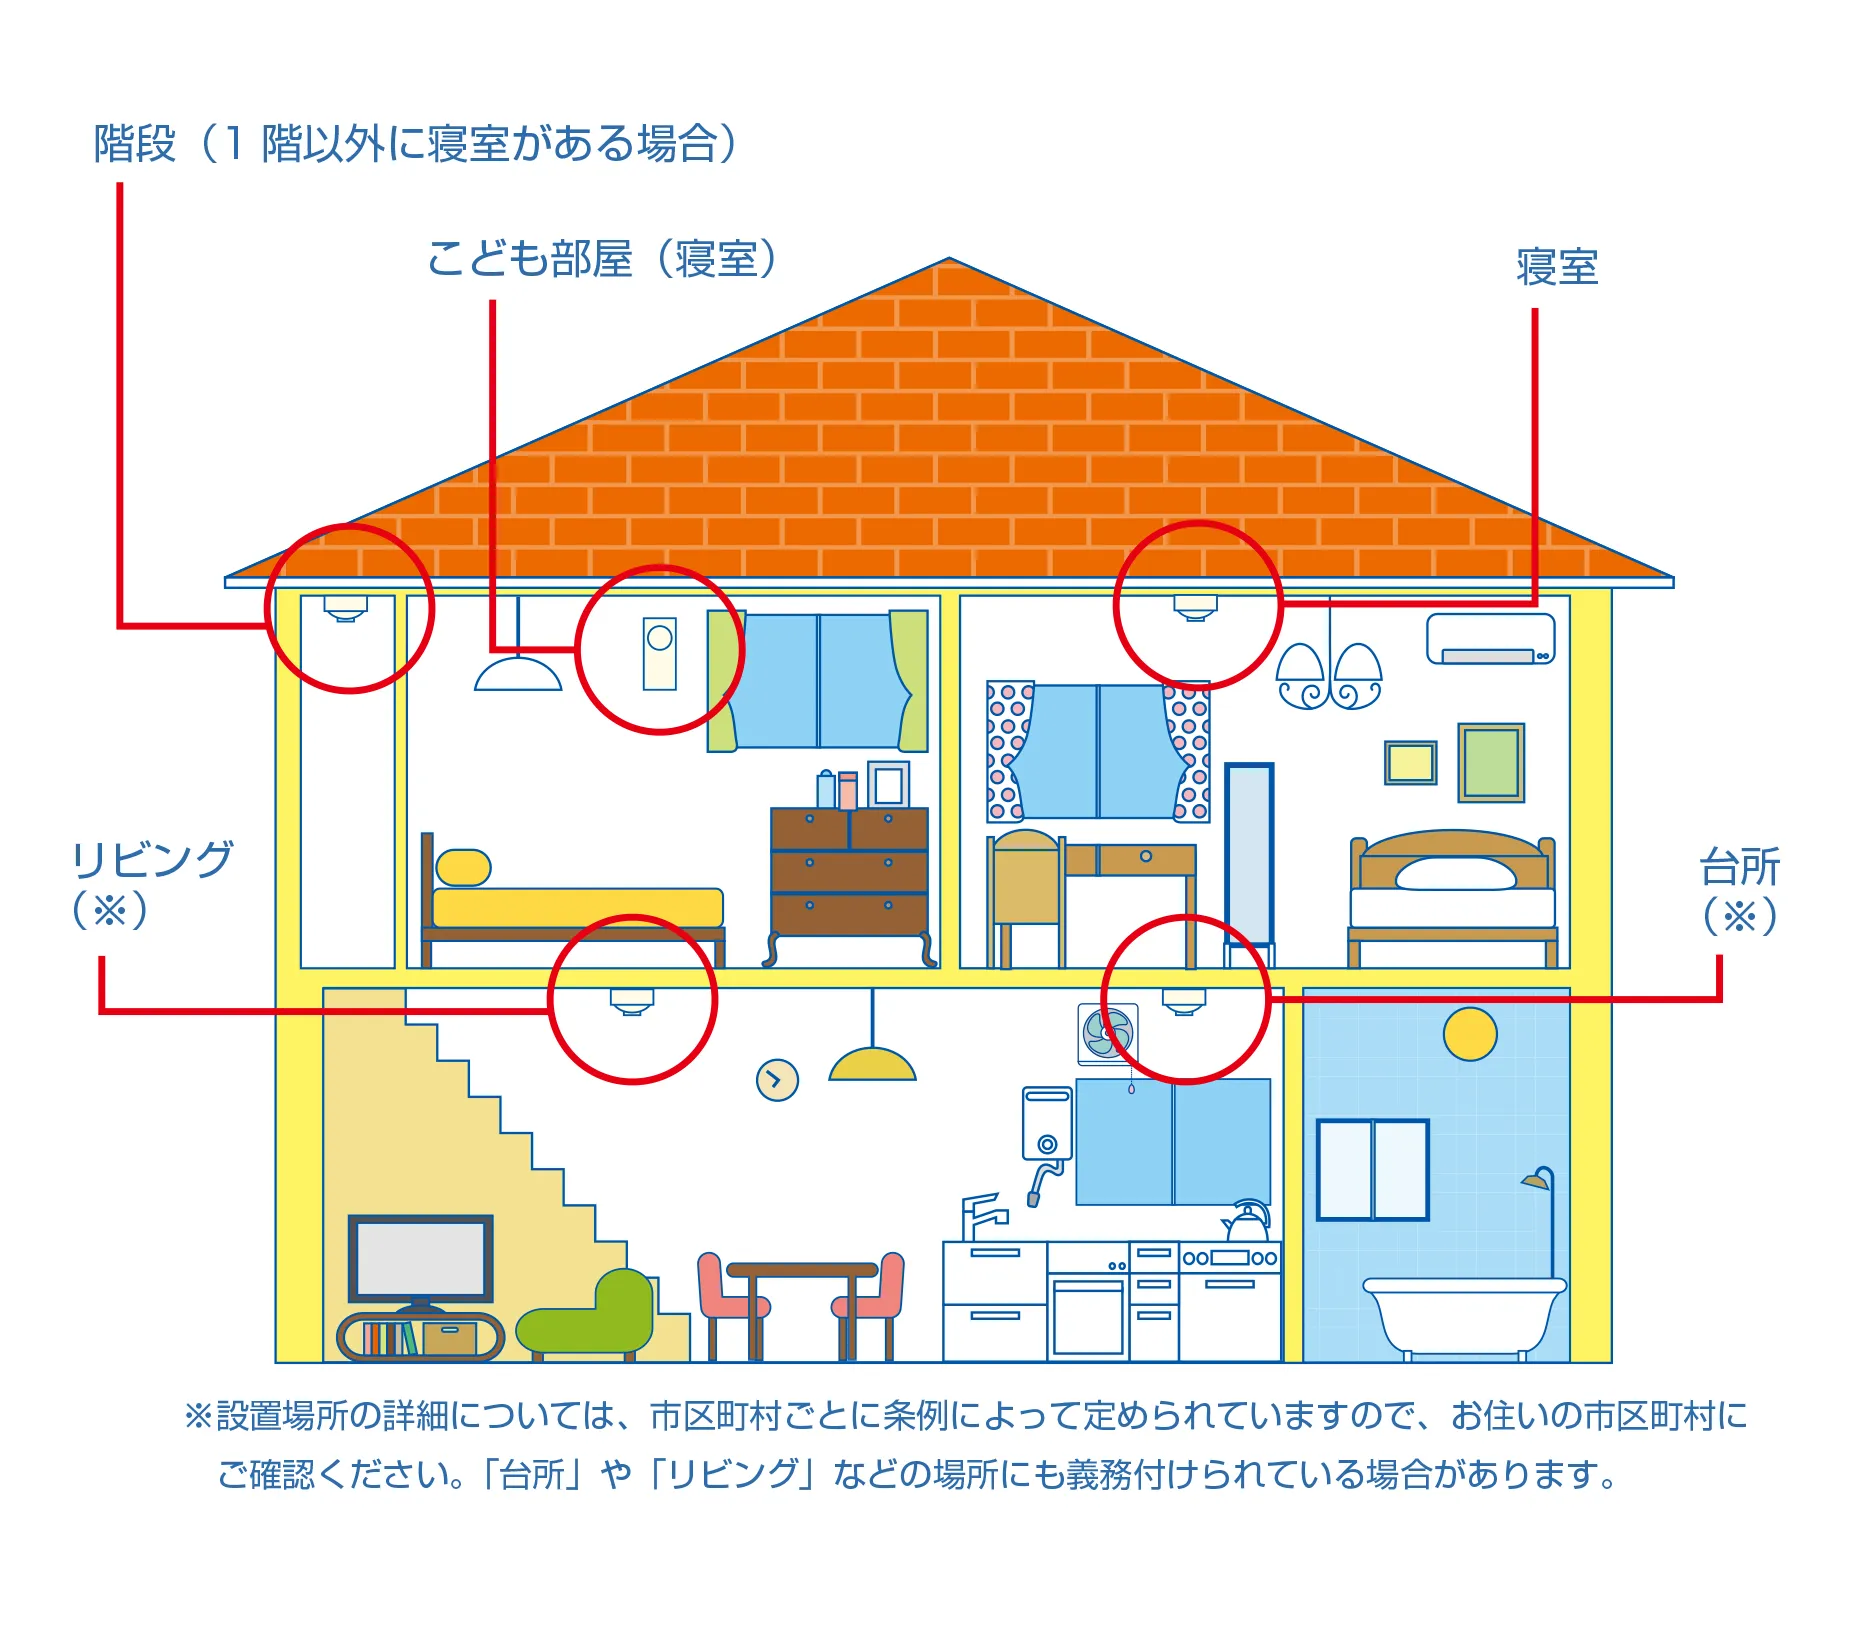 住宅火災警報器の設置場所の例。2階の寝室、階段、こども部屋の天井、1階の台所、リビングルームの天井に設置